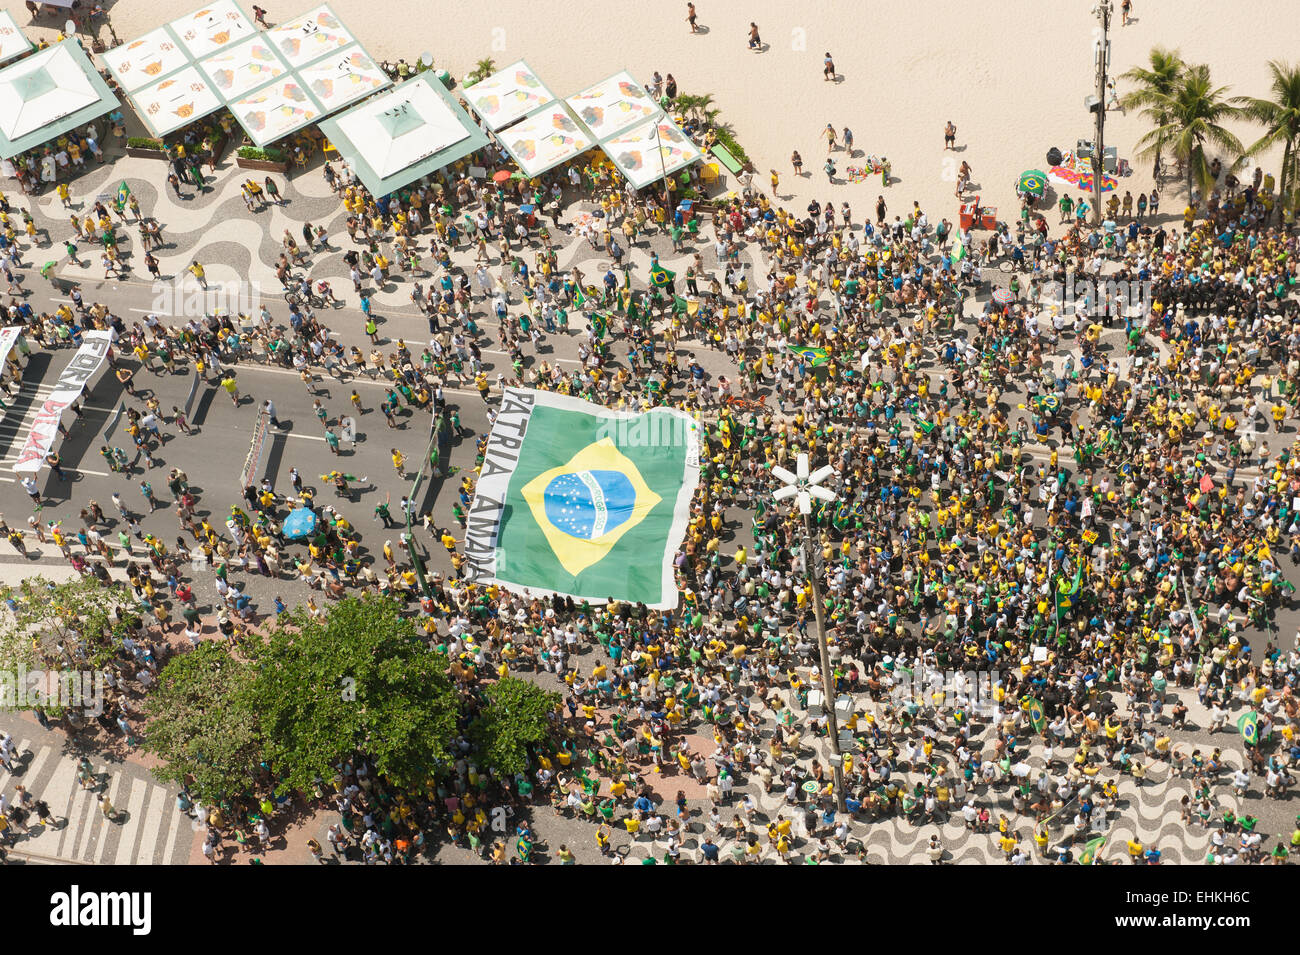 Les manifestants portent un immense drapeau brésilien. Rio de Janeiro, Brésil, le 15 mars 2015. Manifestation populaire contre la présidente dilma rousseff. Banque D'Images